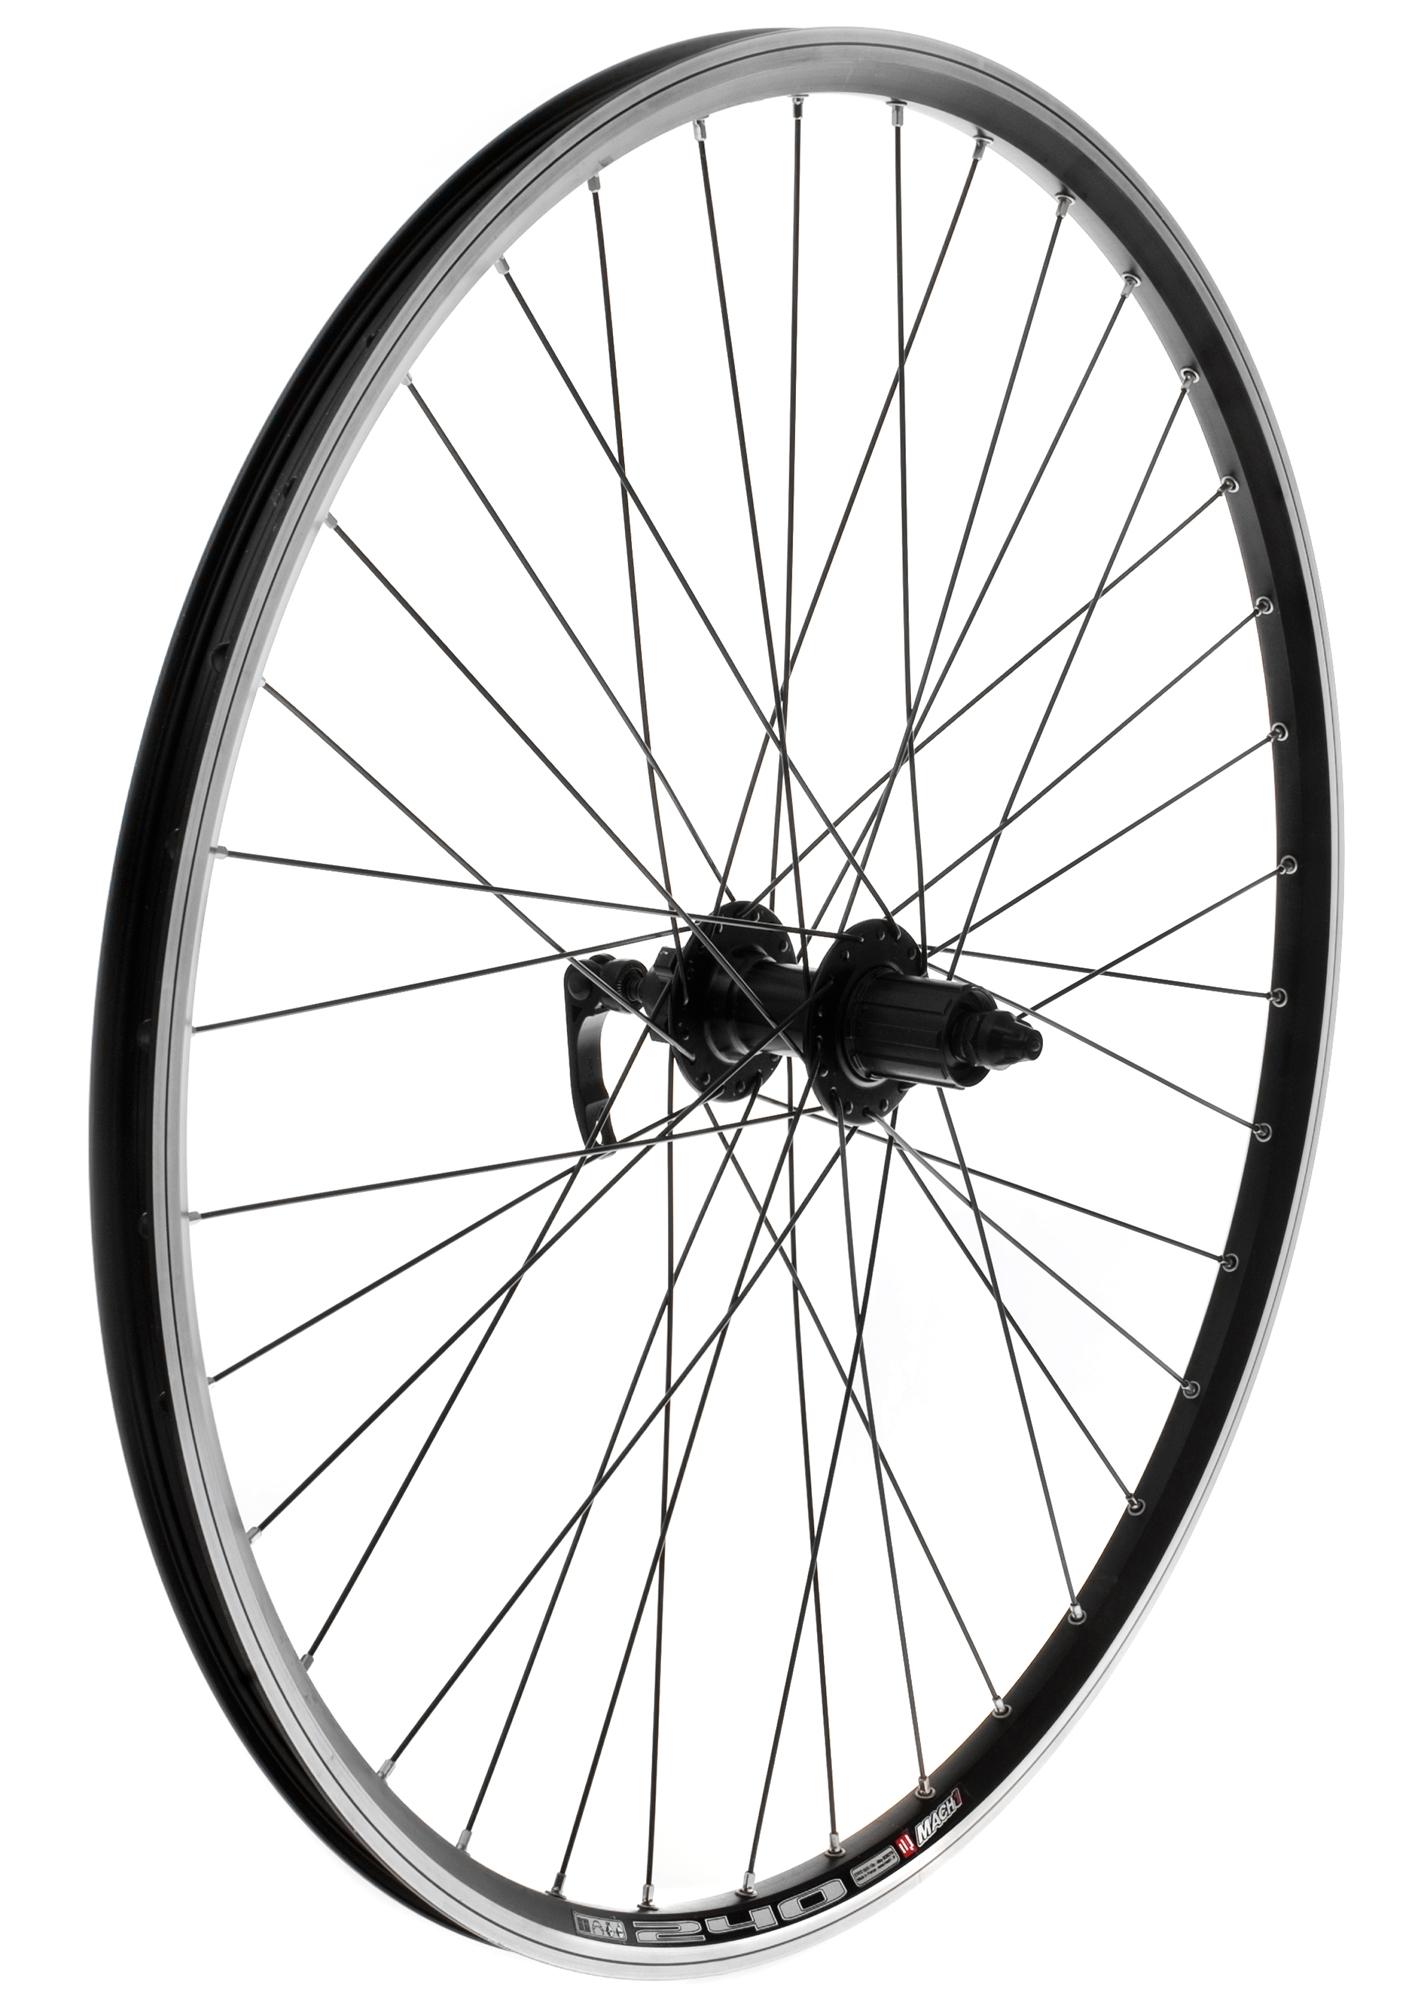 Rear 700c Bike Wheel in Black | Halfords UK